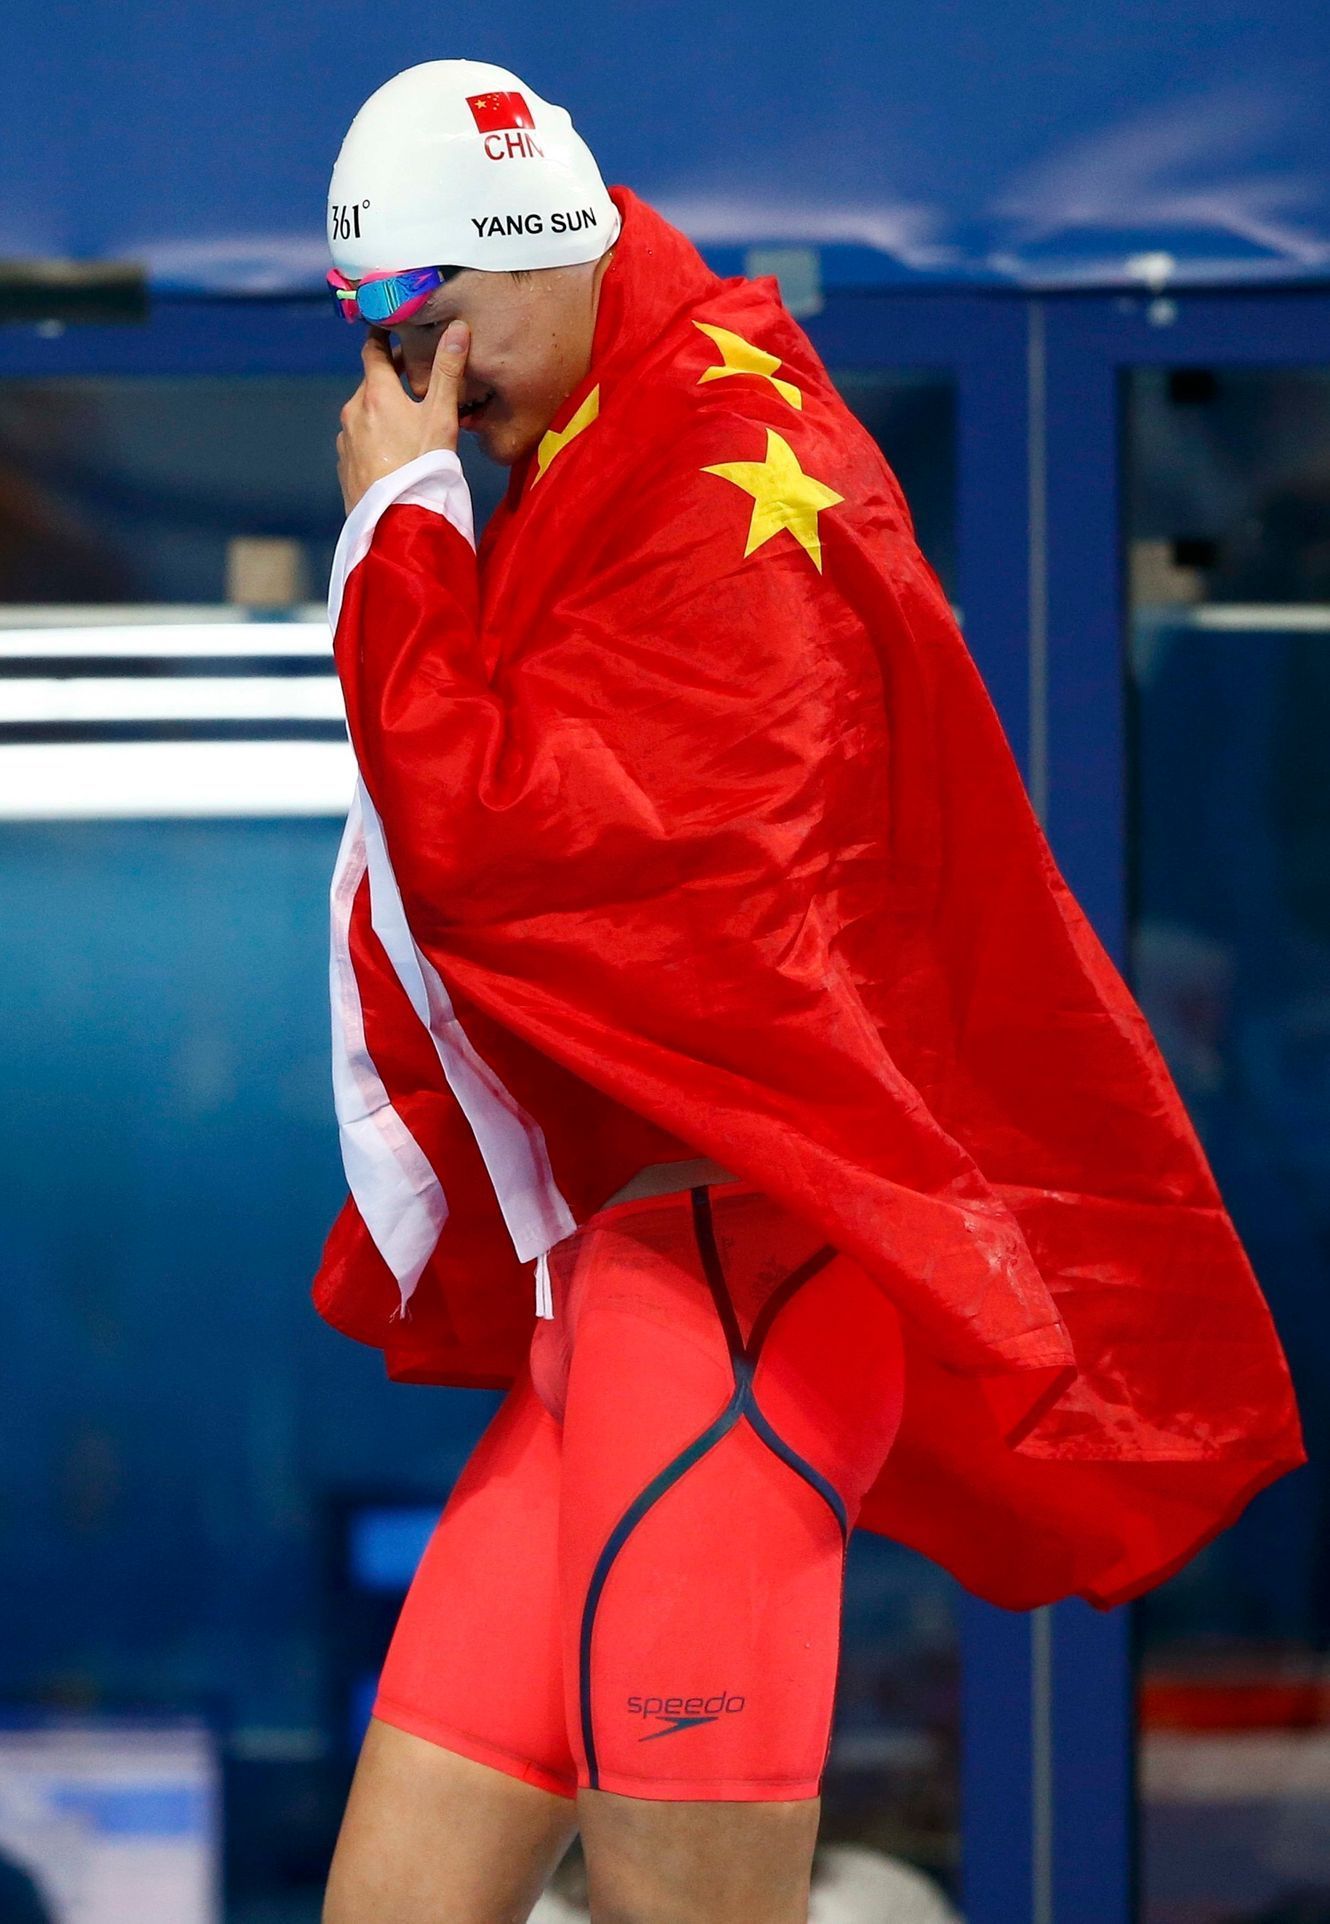 MS v plavání 2015: Sun Jang, Čína